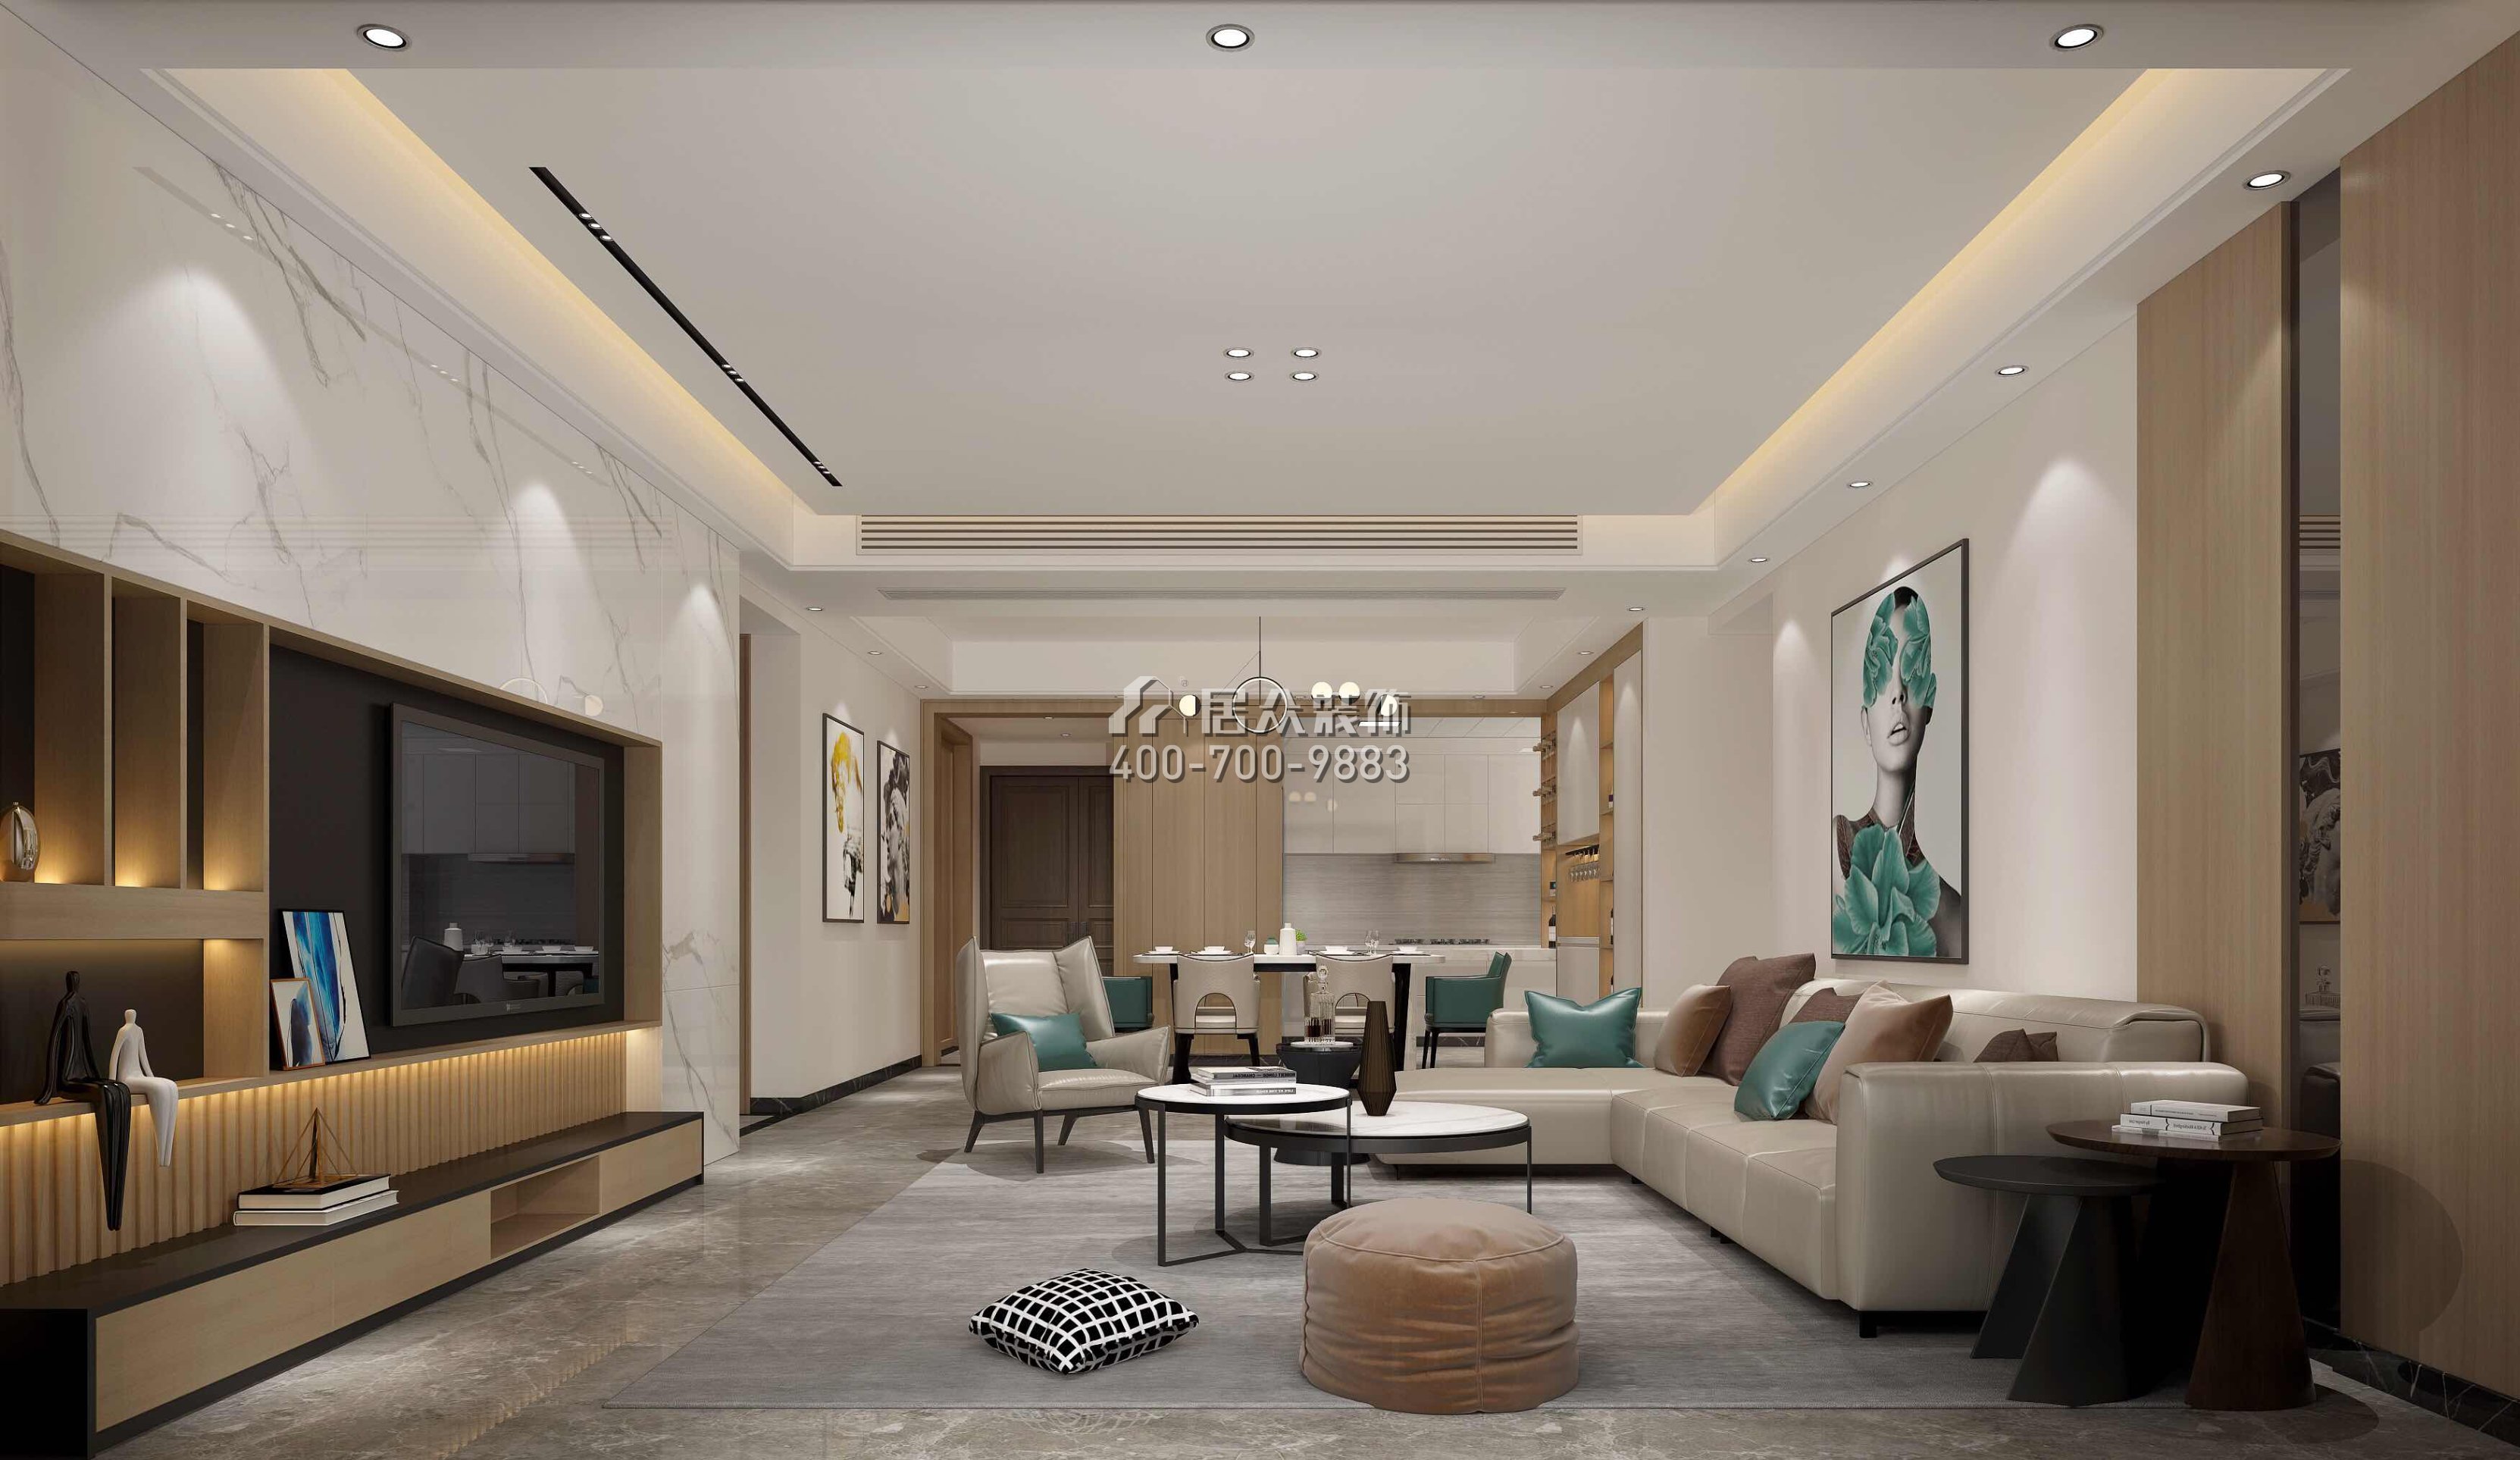 鼎峰尚境155平方米现代简约风格平层户型客厅装修效果图